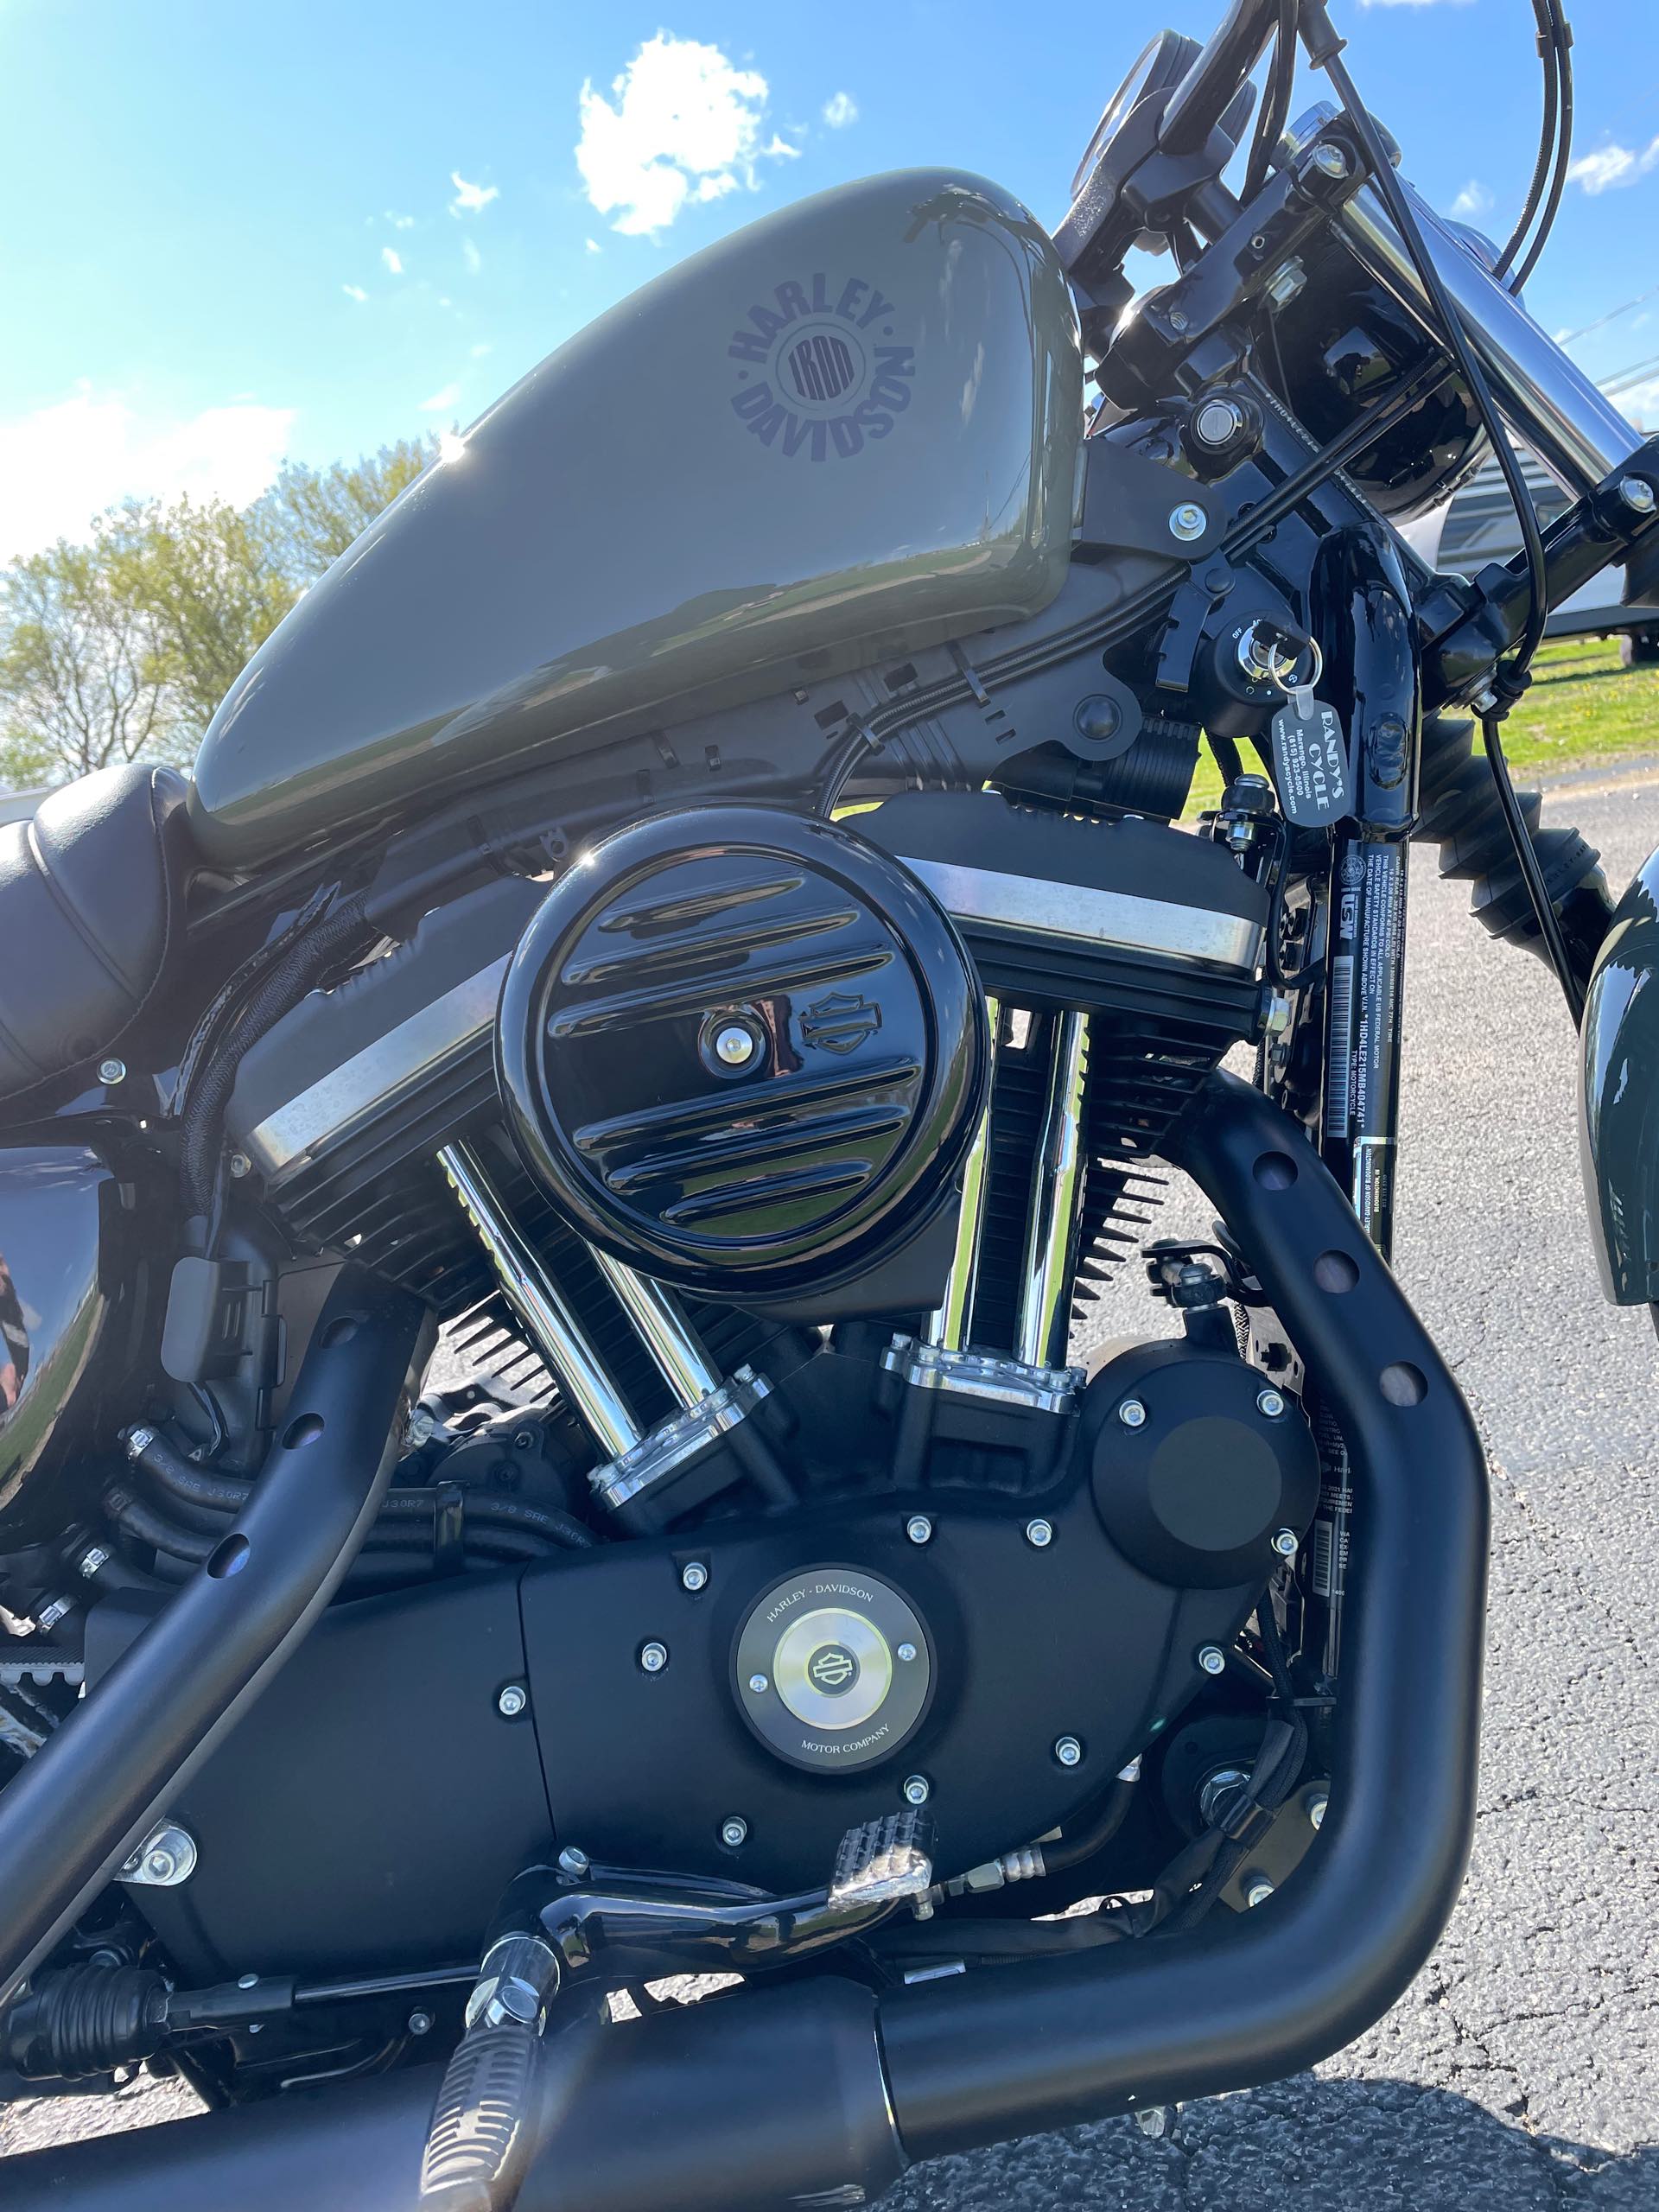 2021 Harley-Davidson Cruiser XL 883N Iron 883 at Randy's Cycle